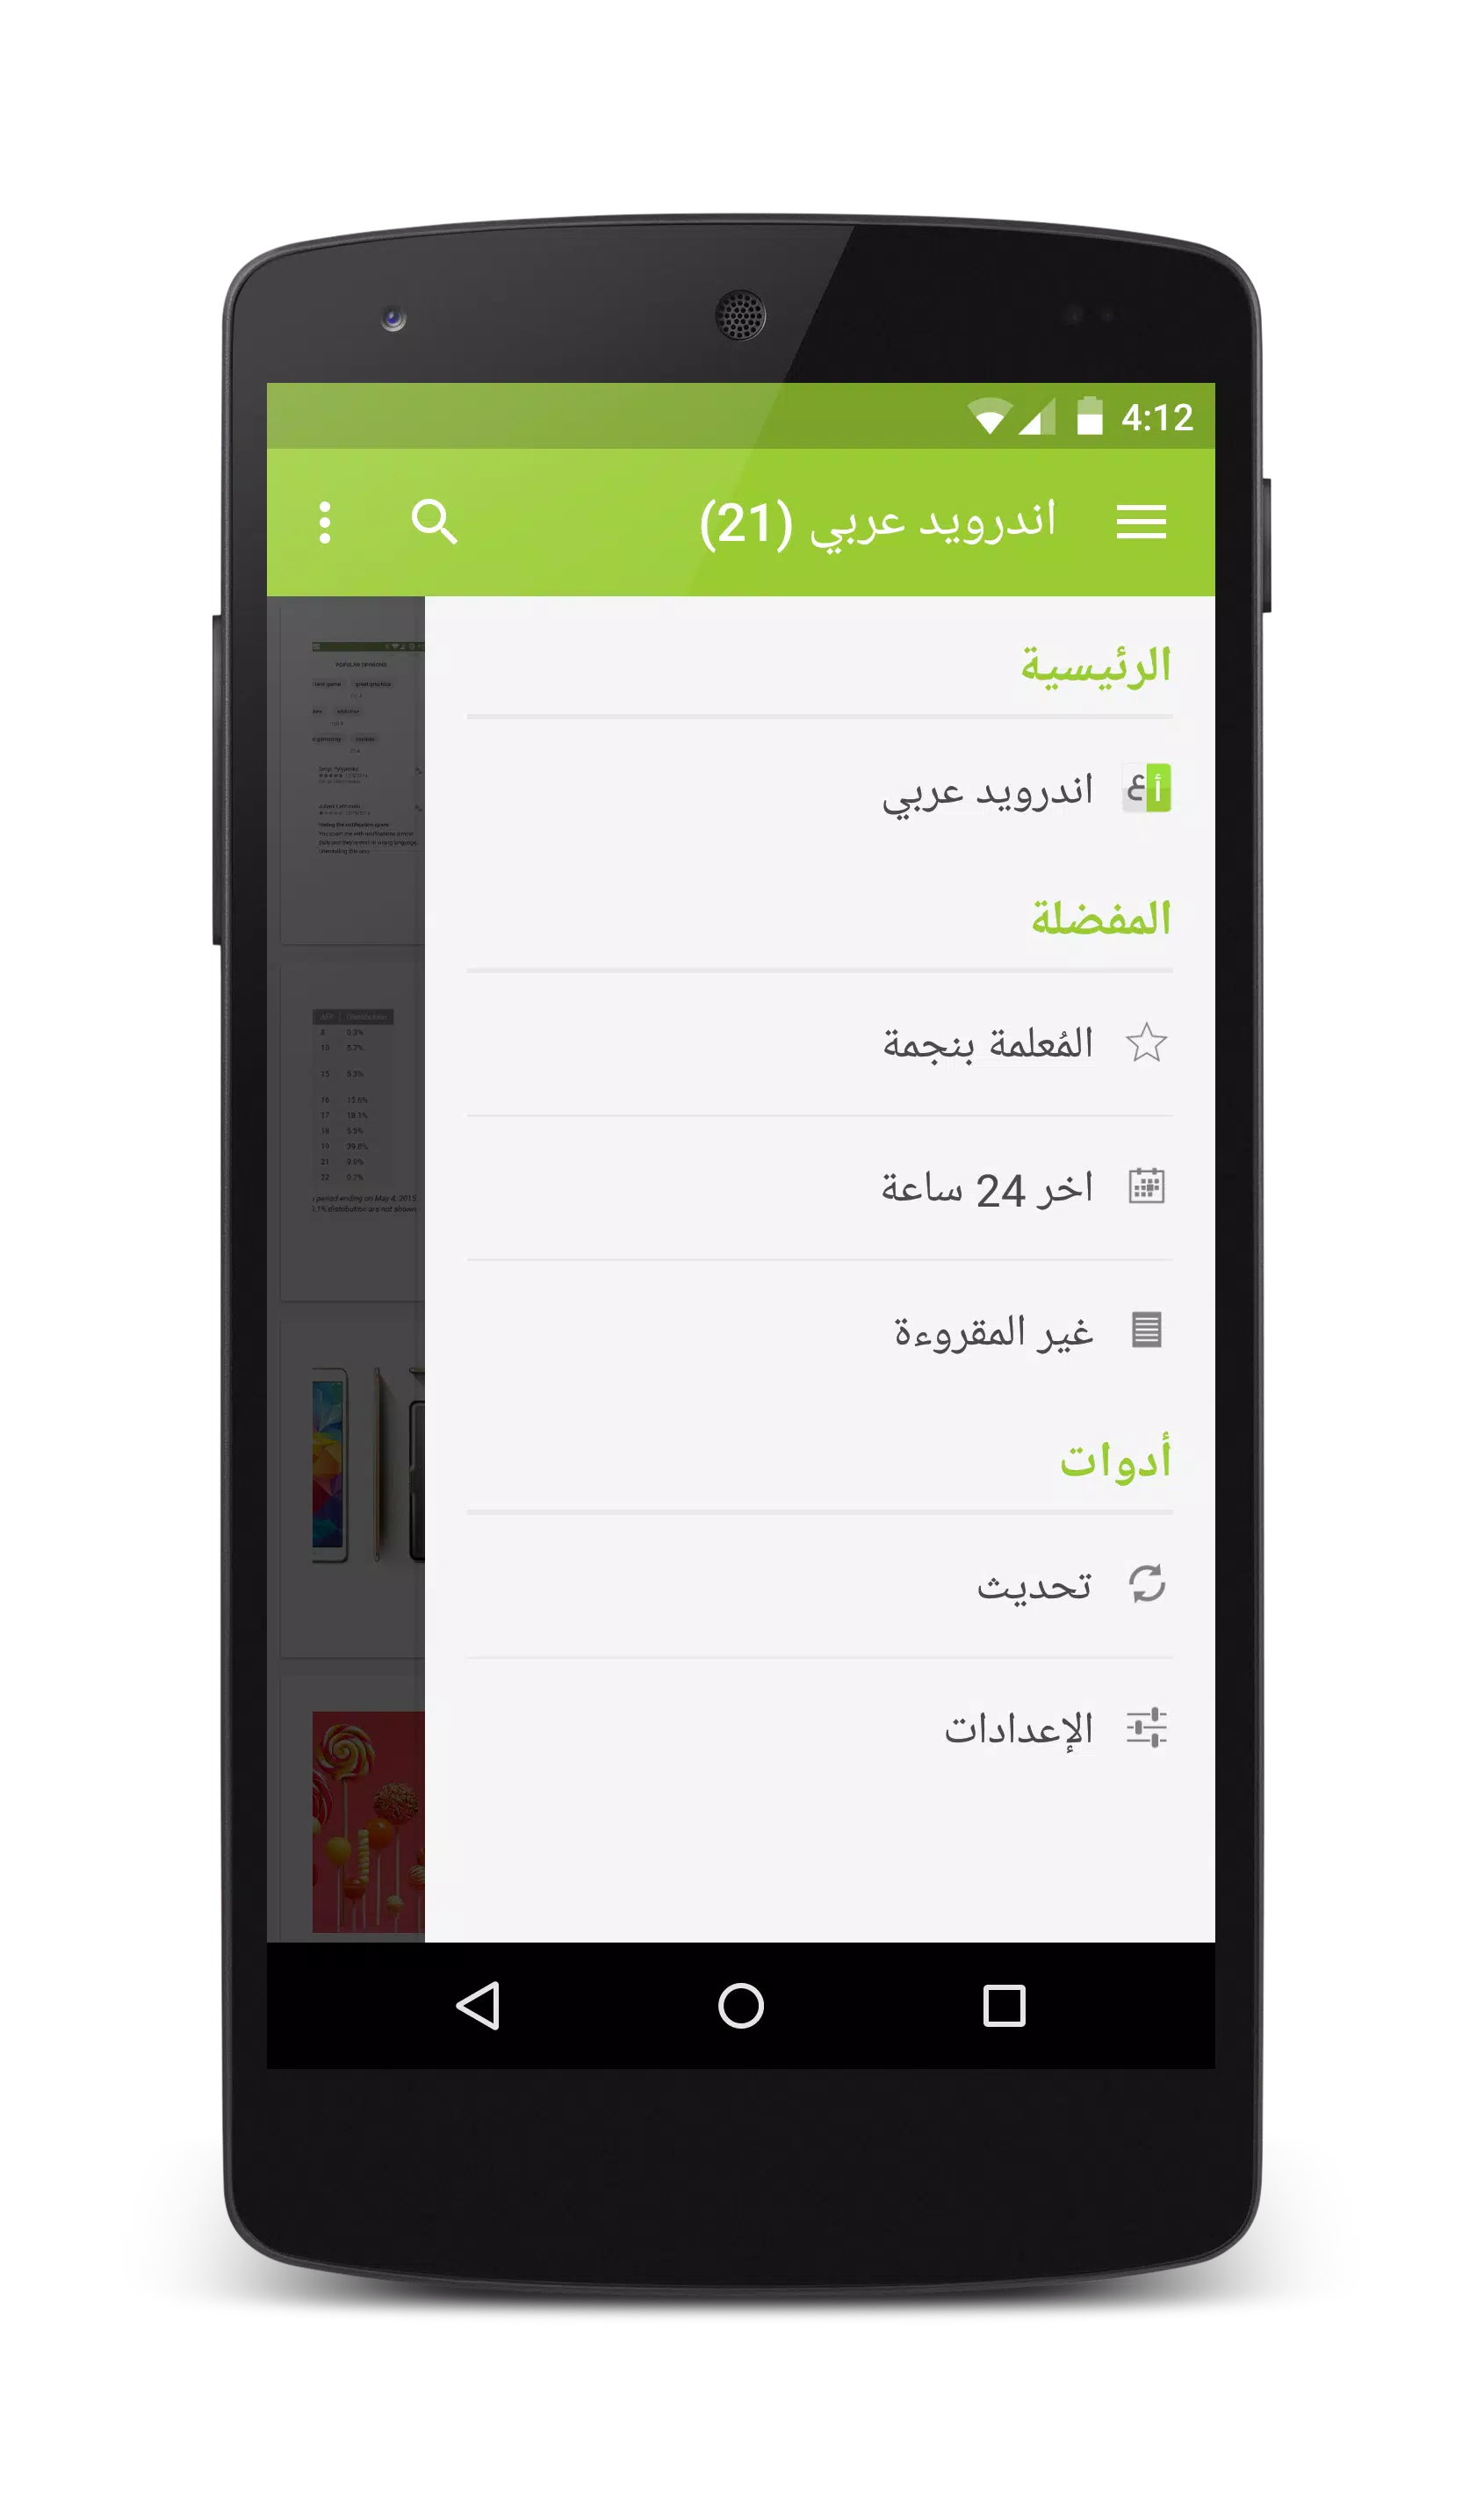 اندرويد عربي APK for Android Download